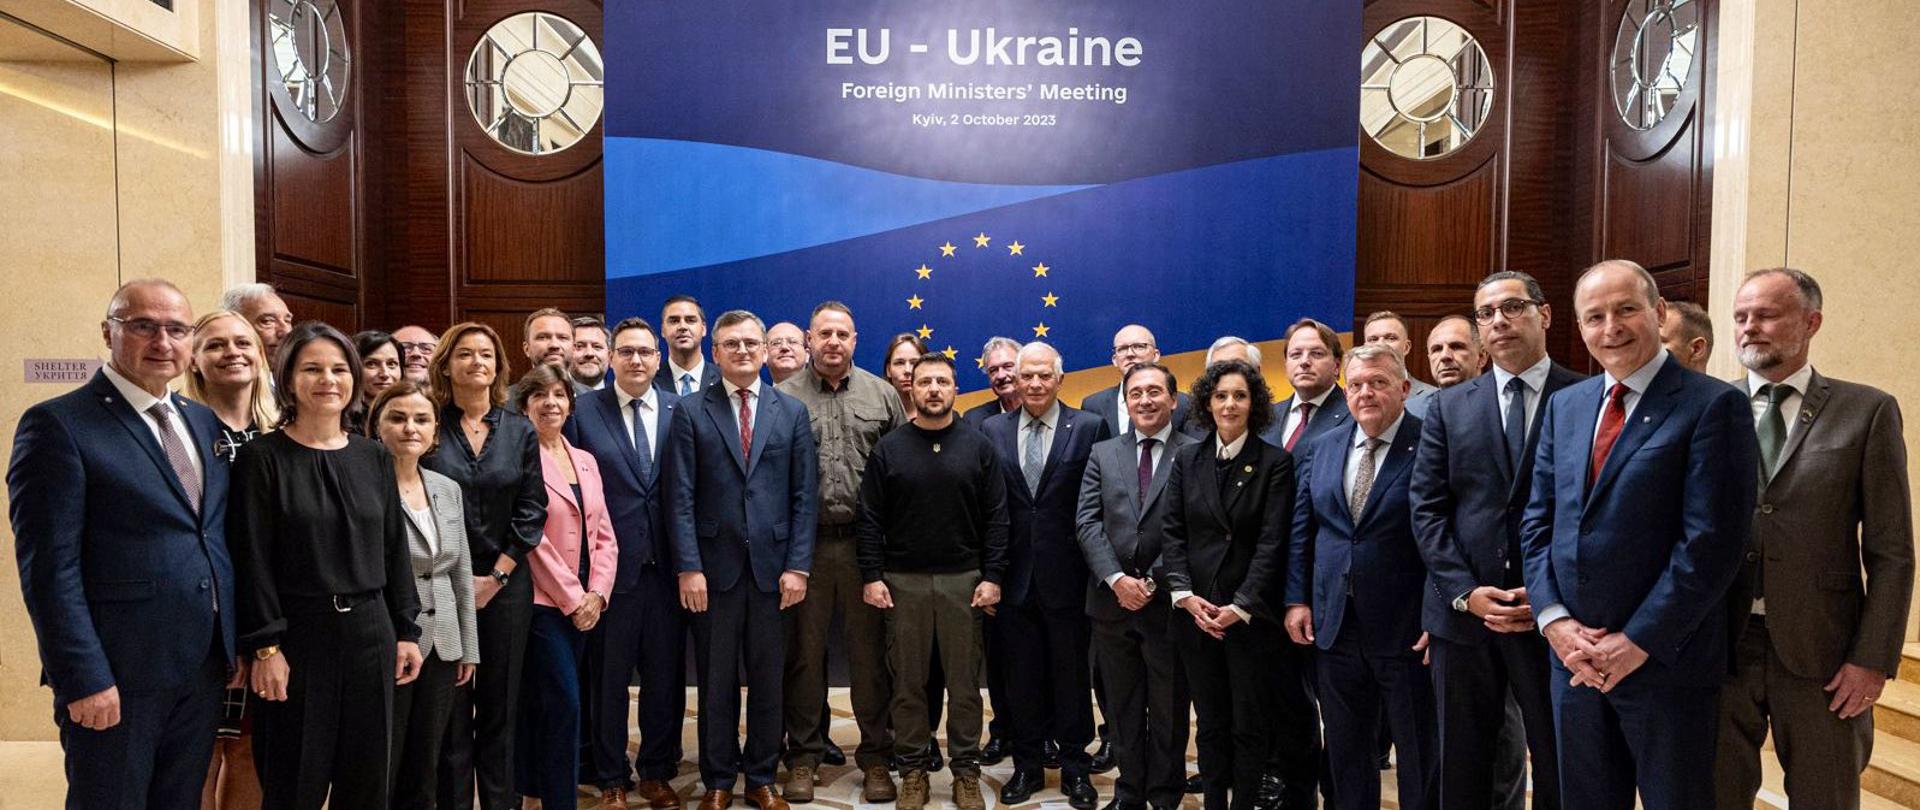 Nieformalne spotkanie Ministrów spraw zagranicznych państw członkowskich UE